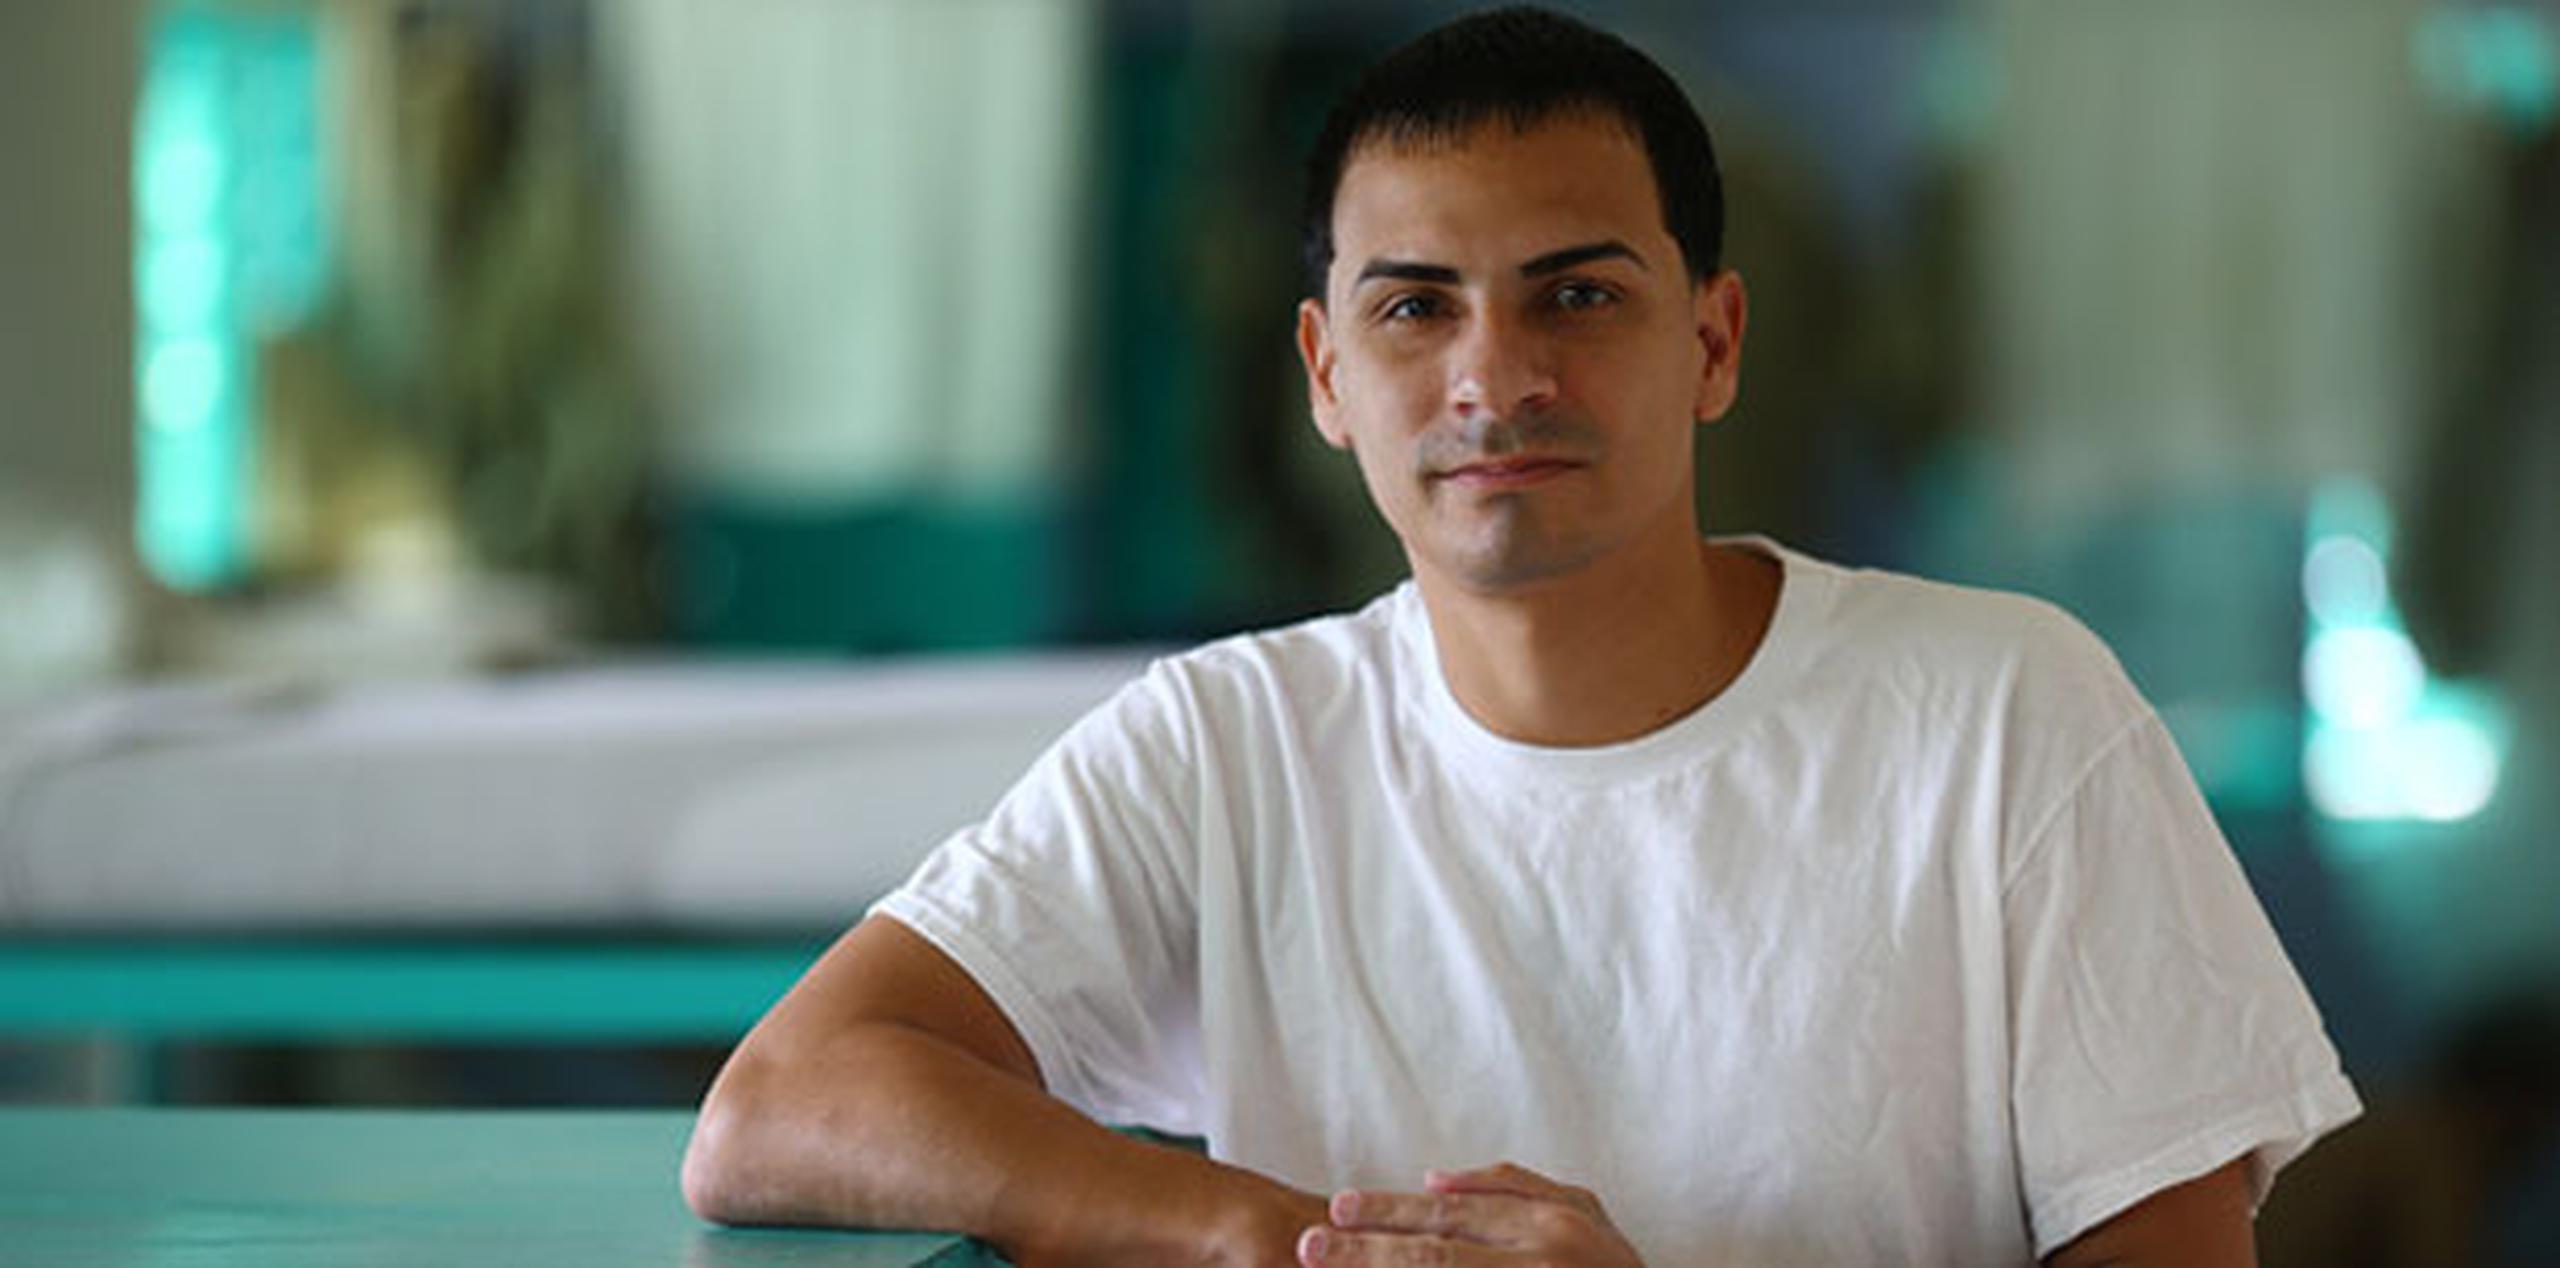 El ex confinado Aníbal Santana Merced, quien ahora estudia en la universidad, formó parte de un proceso de rehabilitación que inspiró a la realización del documental. (Suministrada) 
